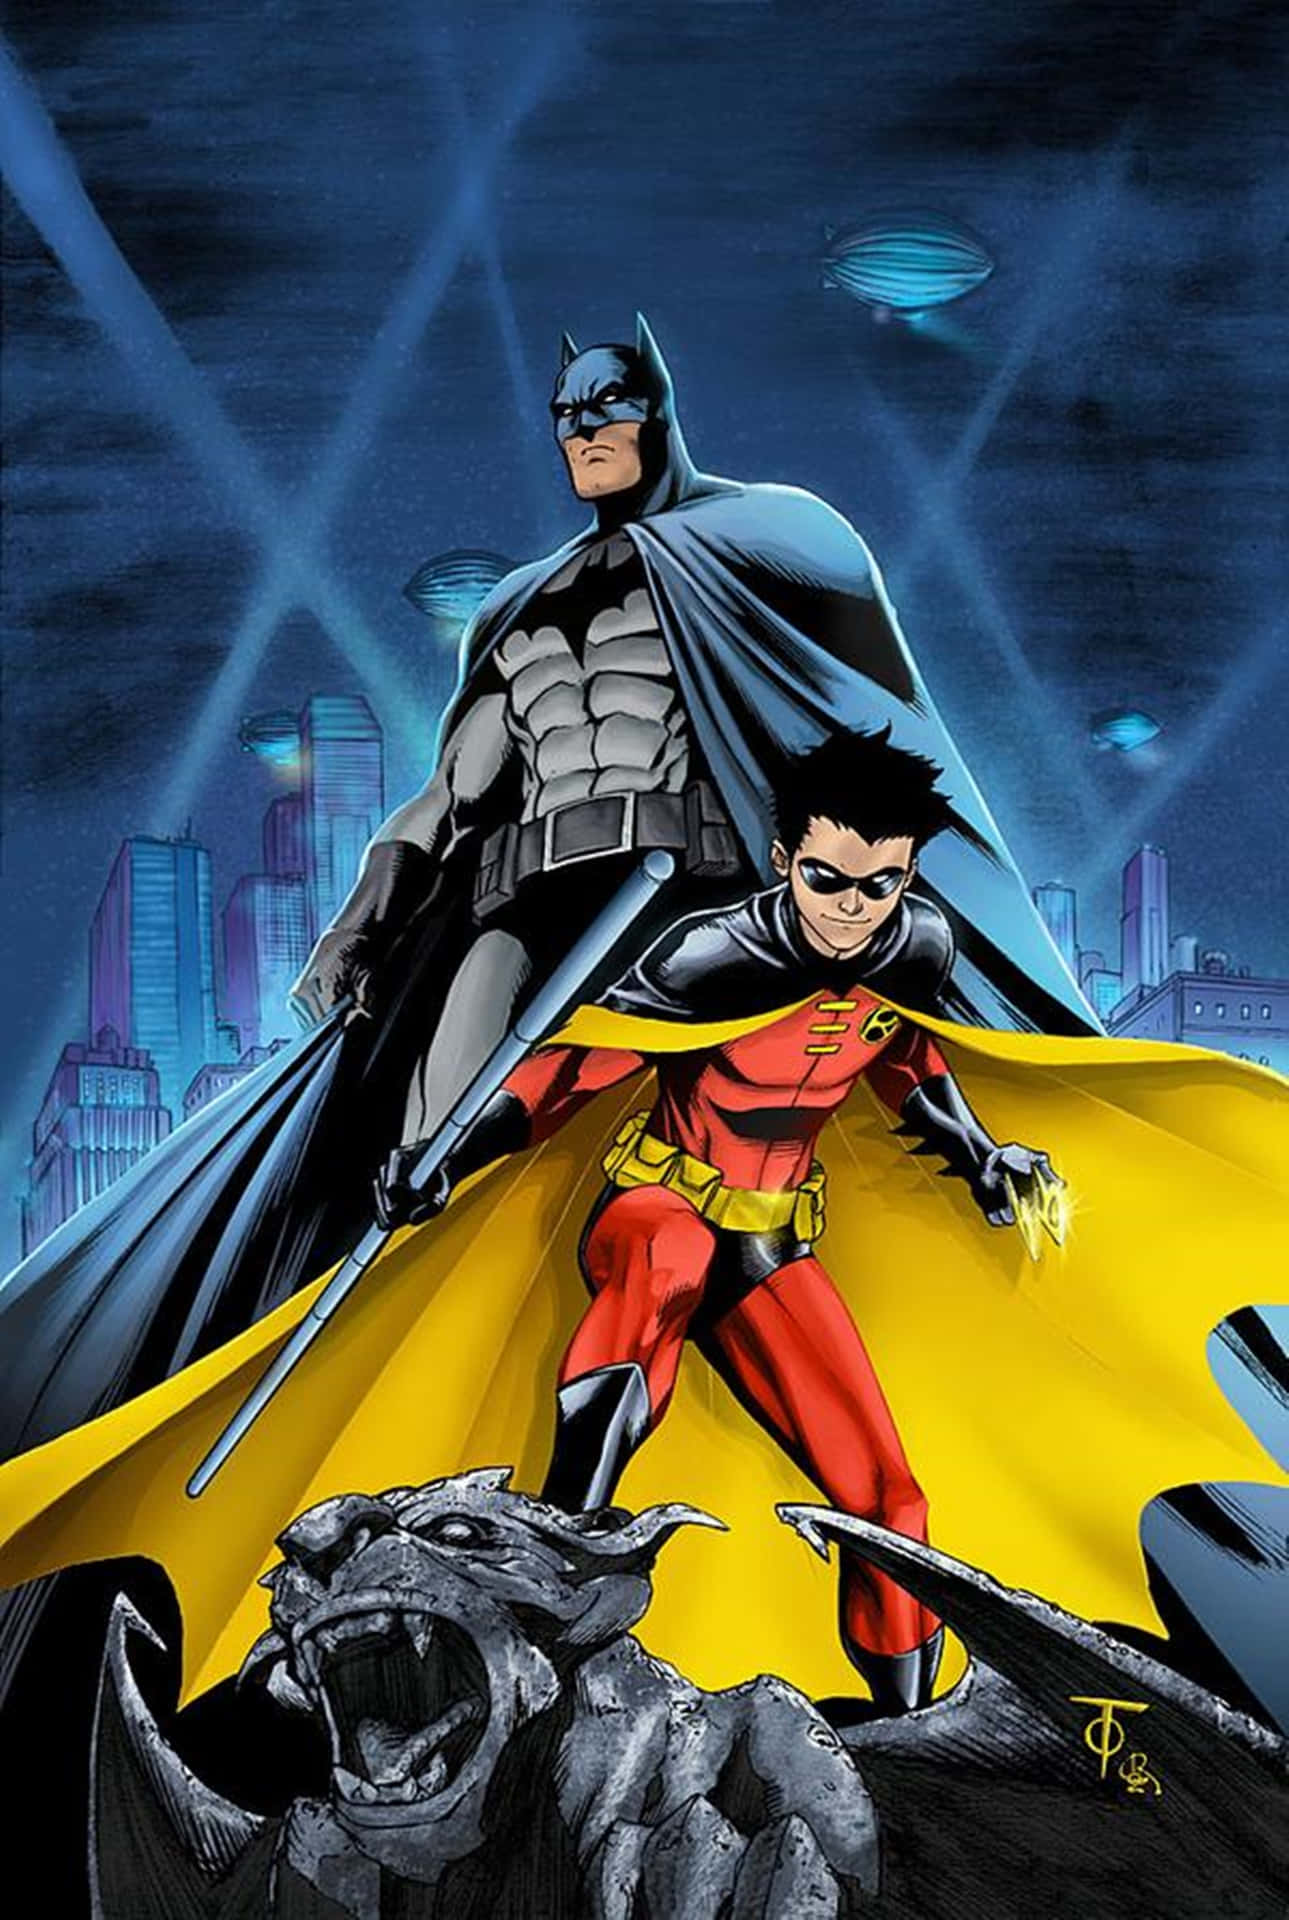 Robins comics. DC Бэтмен Робин. Бэтмен и Робин. Batman and Robin 1997. Робин (DC Comics).